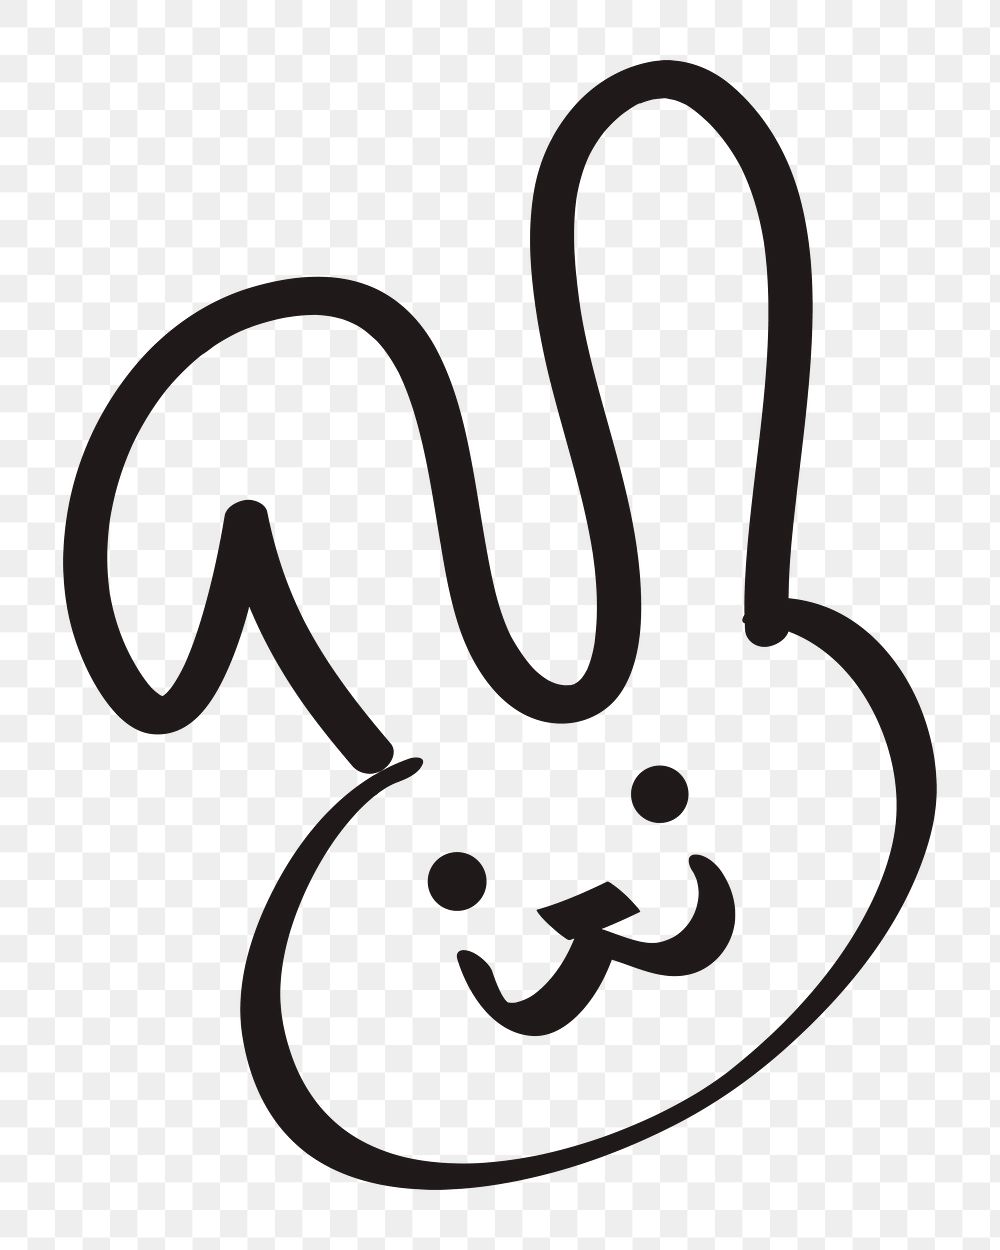 Easter bunny png sticker, festive doodle on transparent background